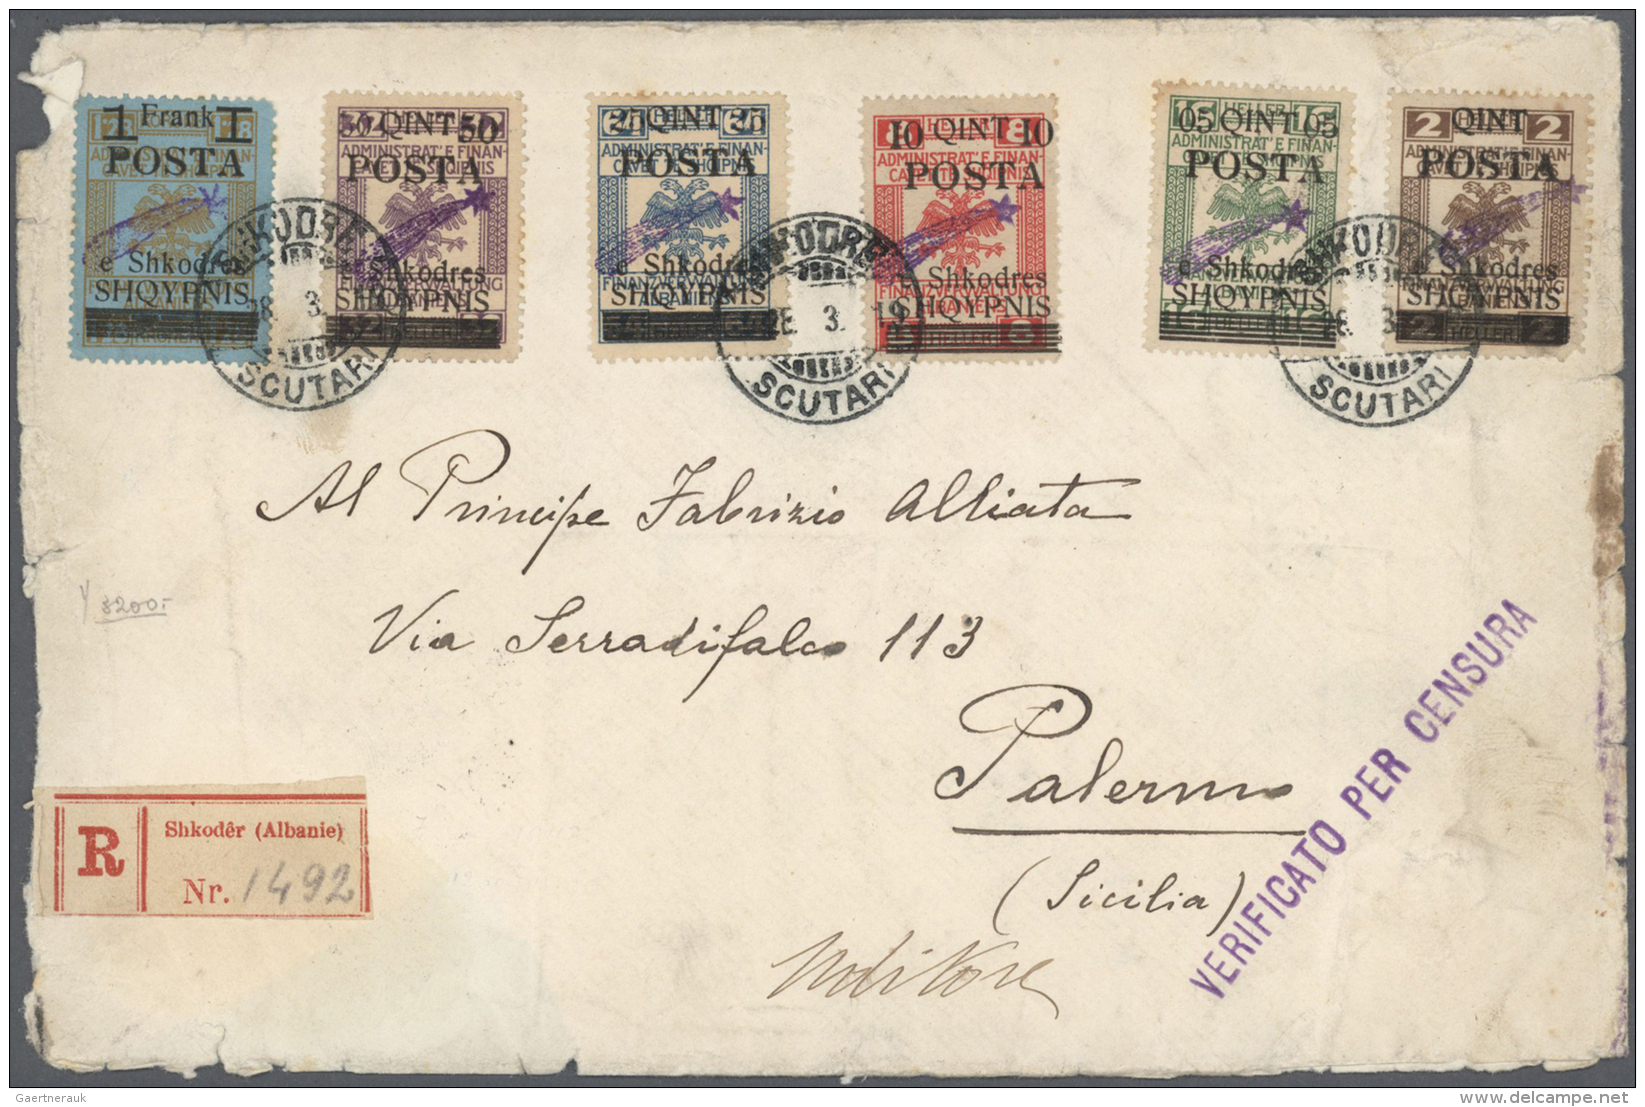 Albanien: 1919. Registered Cover Franked With Set Of 6 "Star". Creased. (set Complete For Illustration Number A8) - Albanië